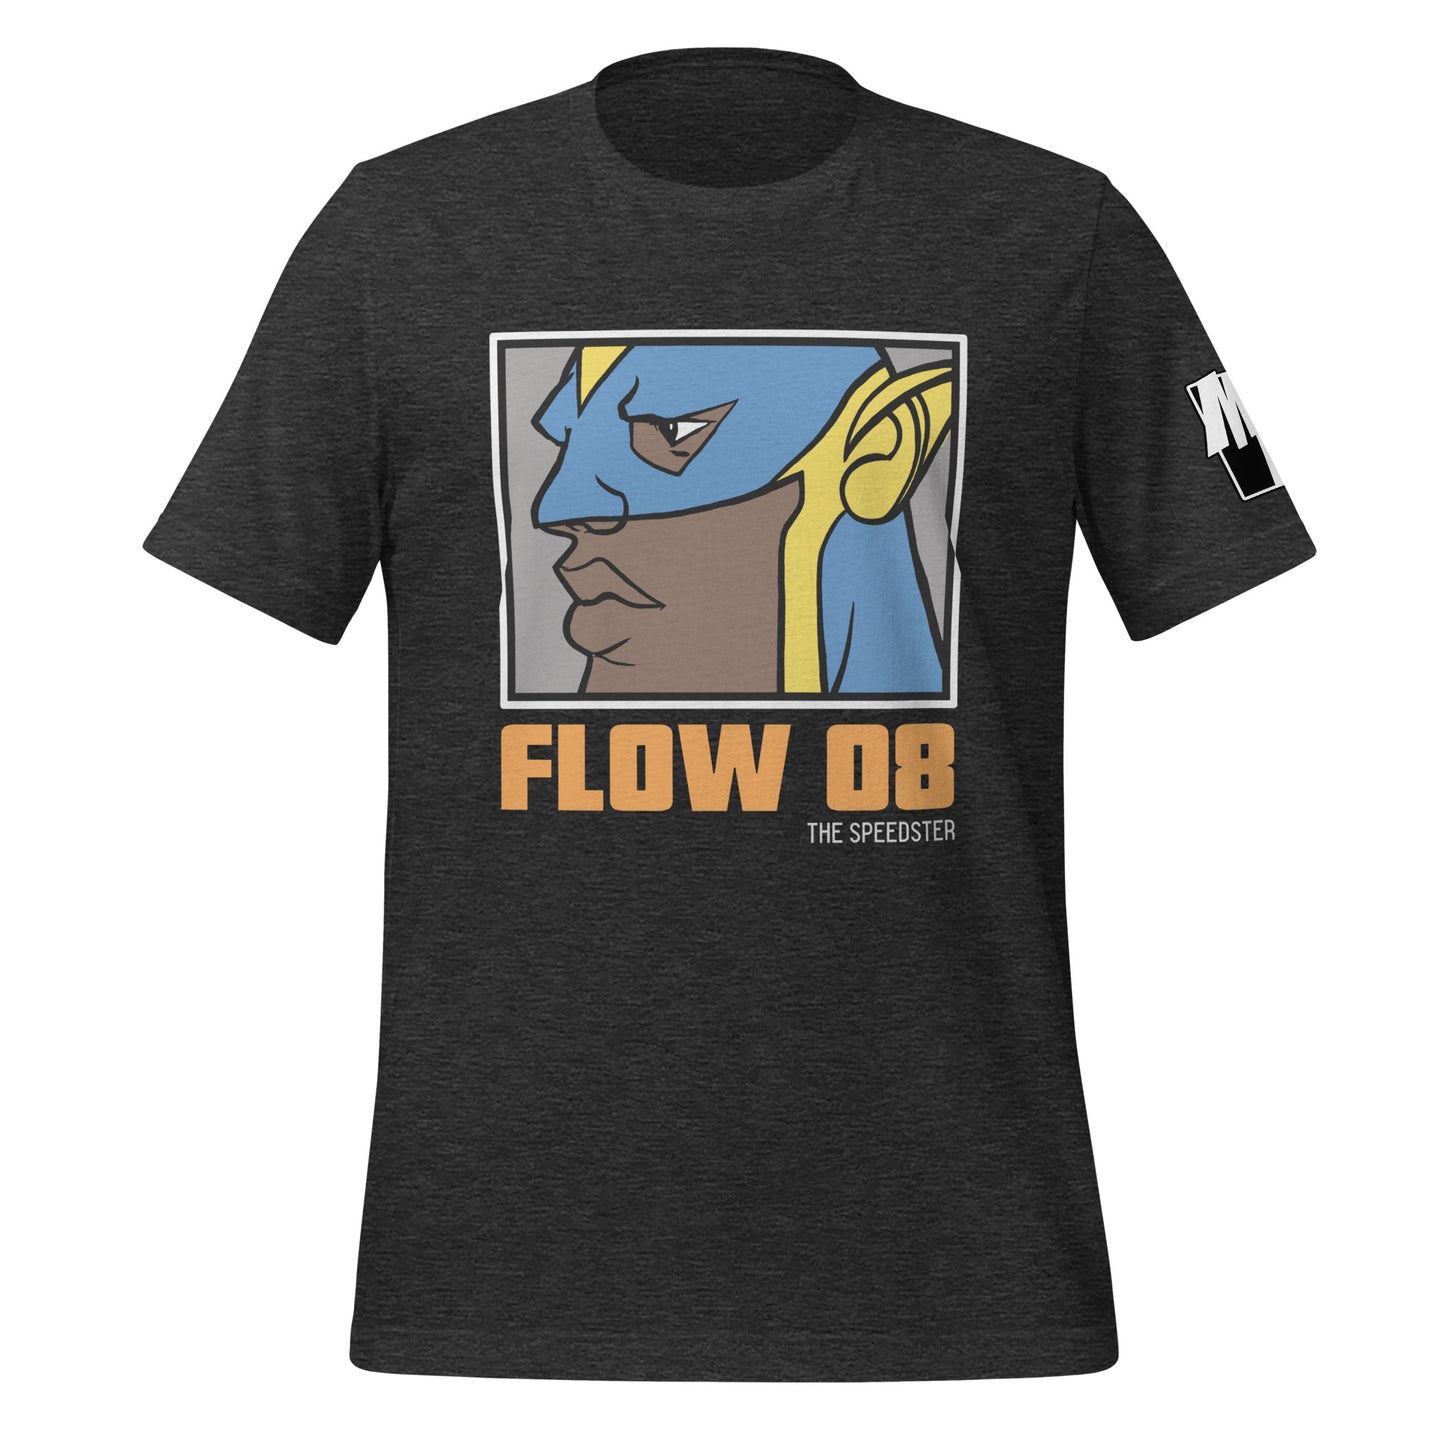 FLOW 08 (THE SPEEDSTER) T-Shirt